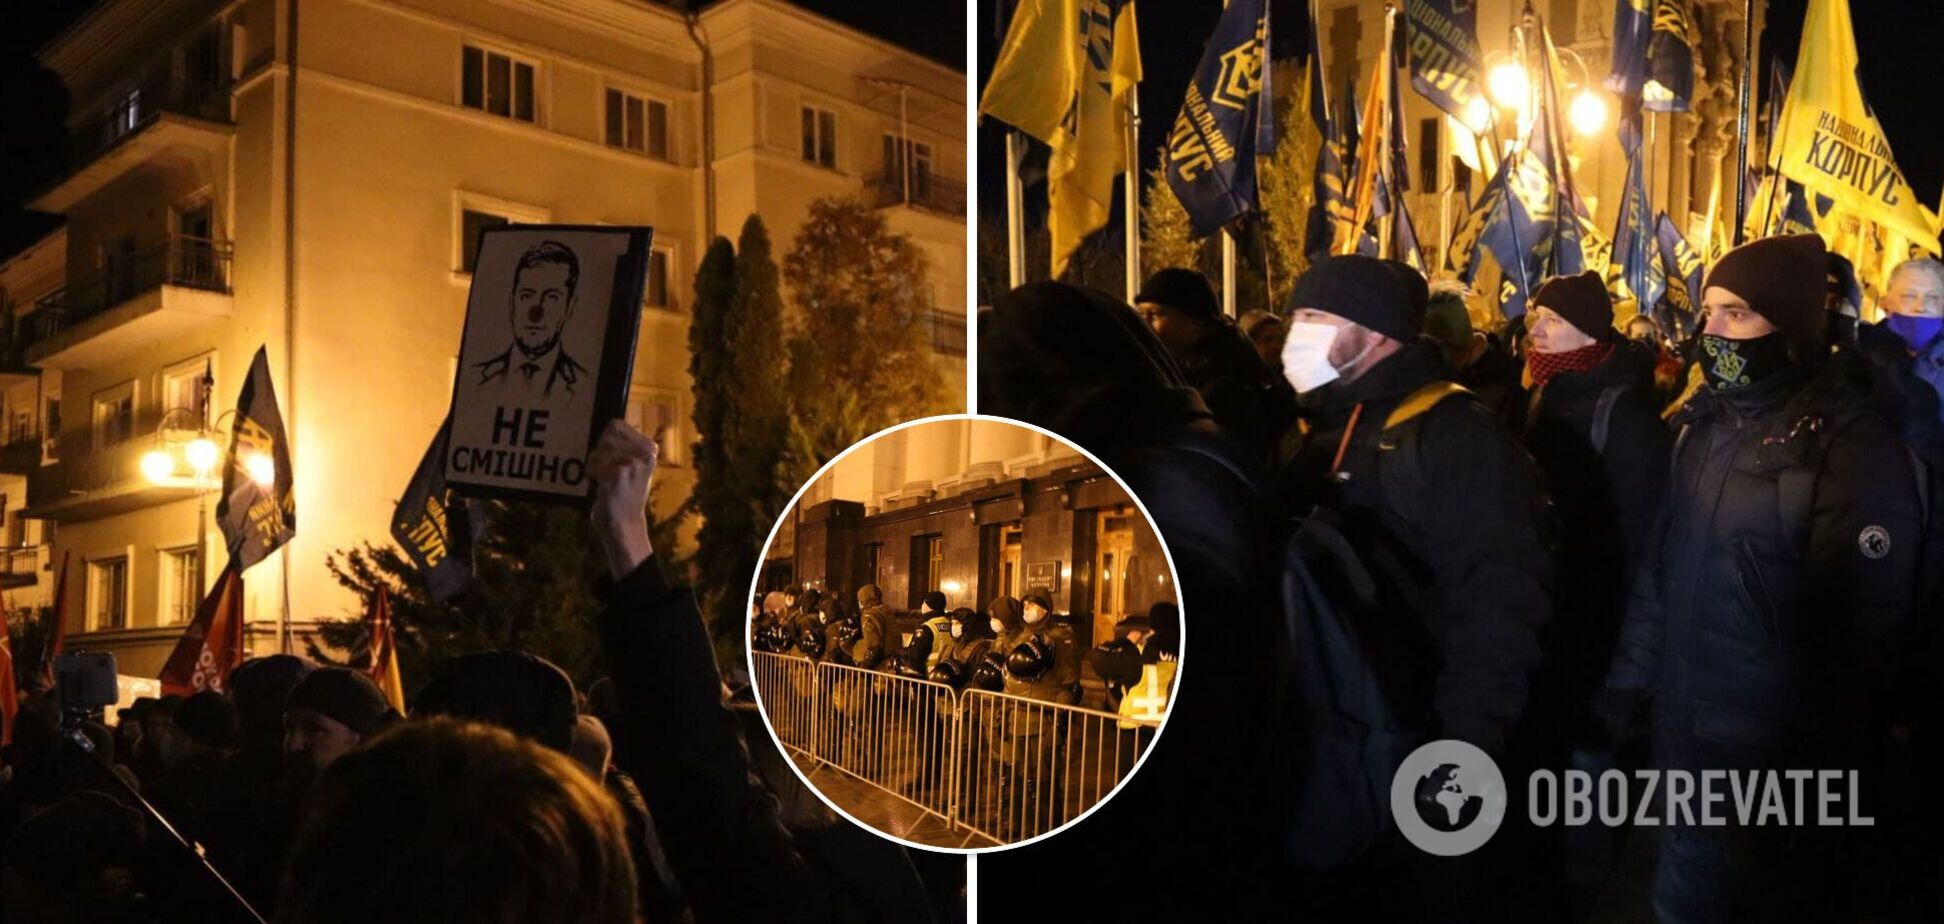 У центрі Києва пройшов мітинг: протестувальники висунули вимоги до влади. Ексклюзивні фото